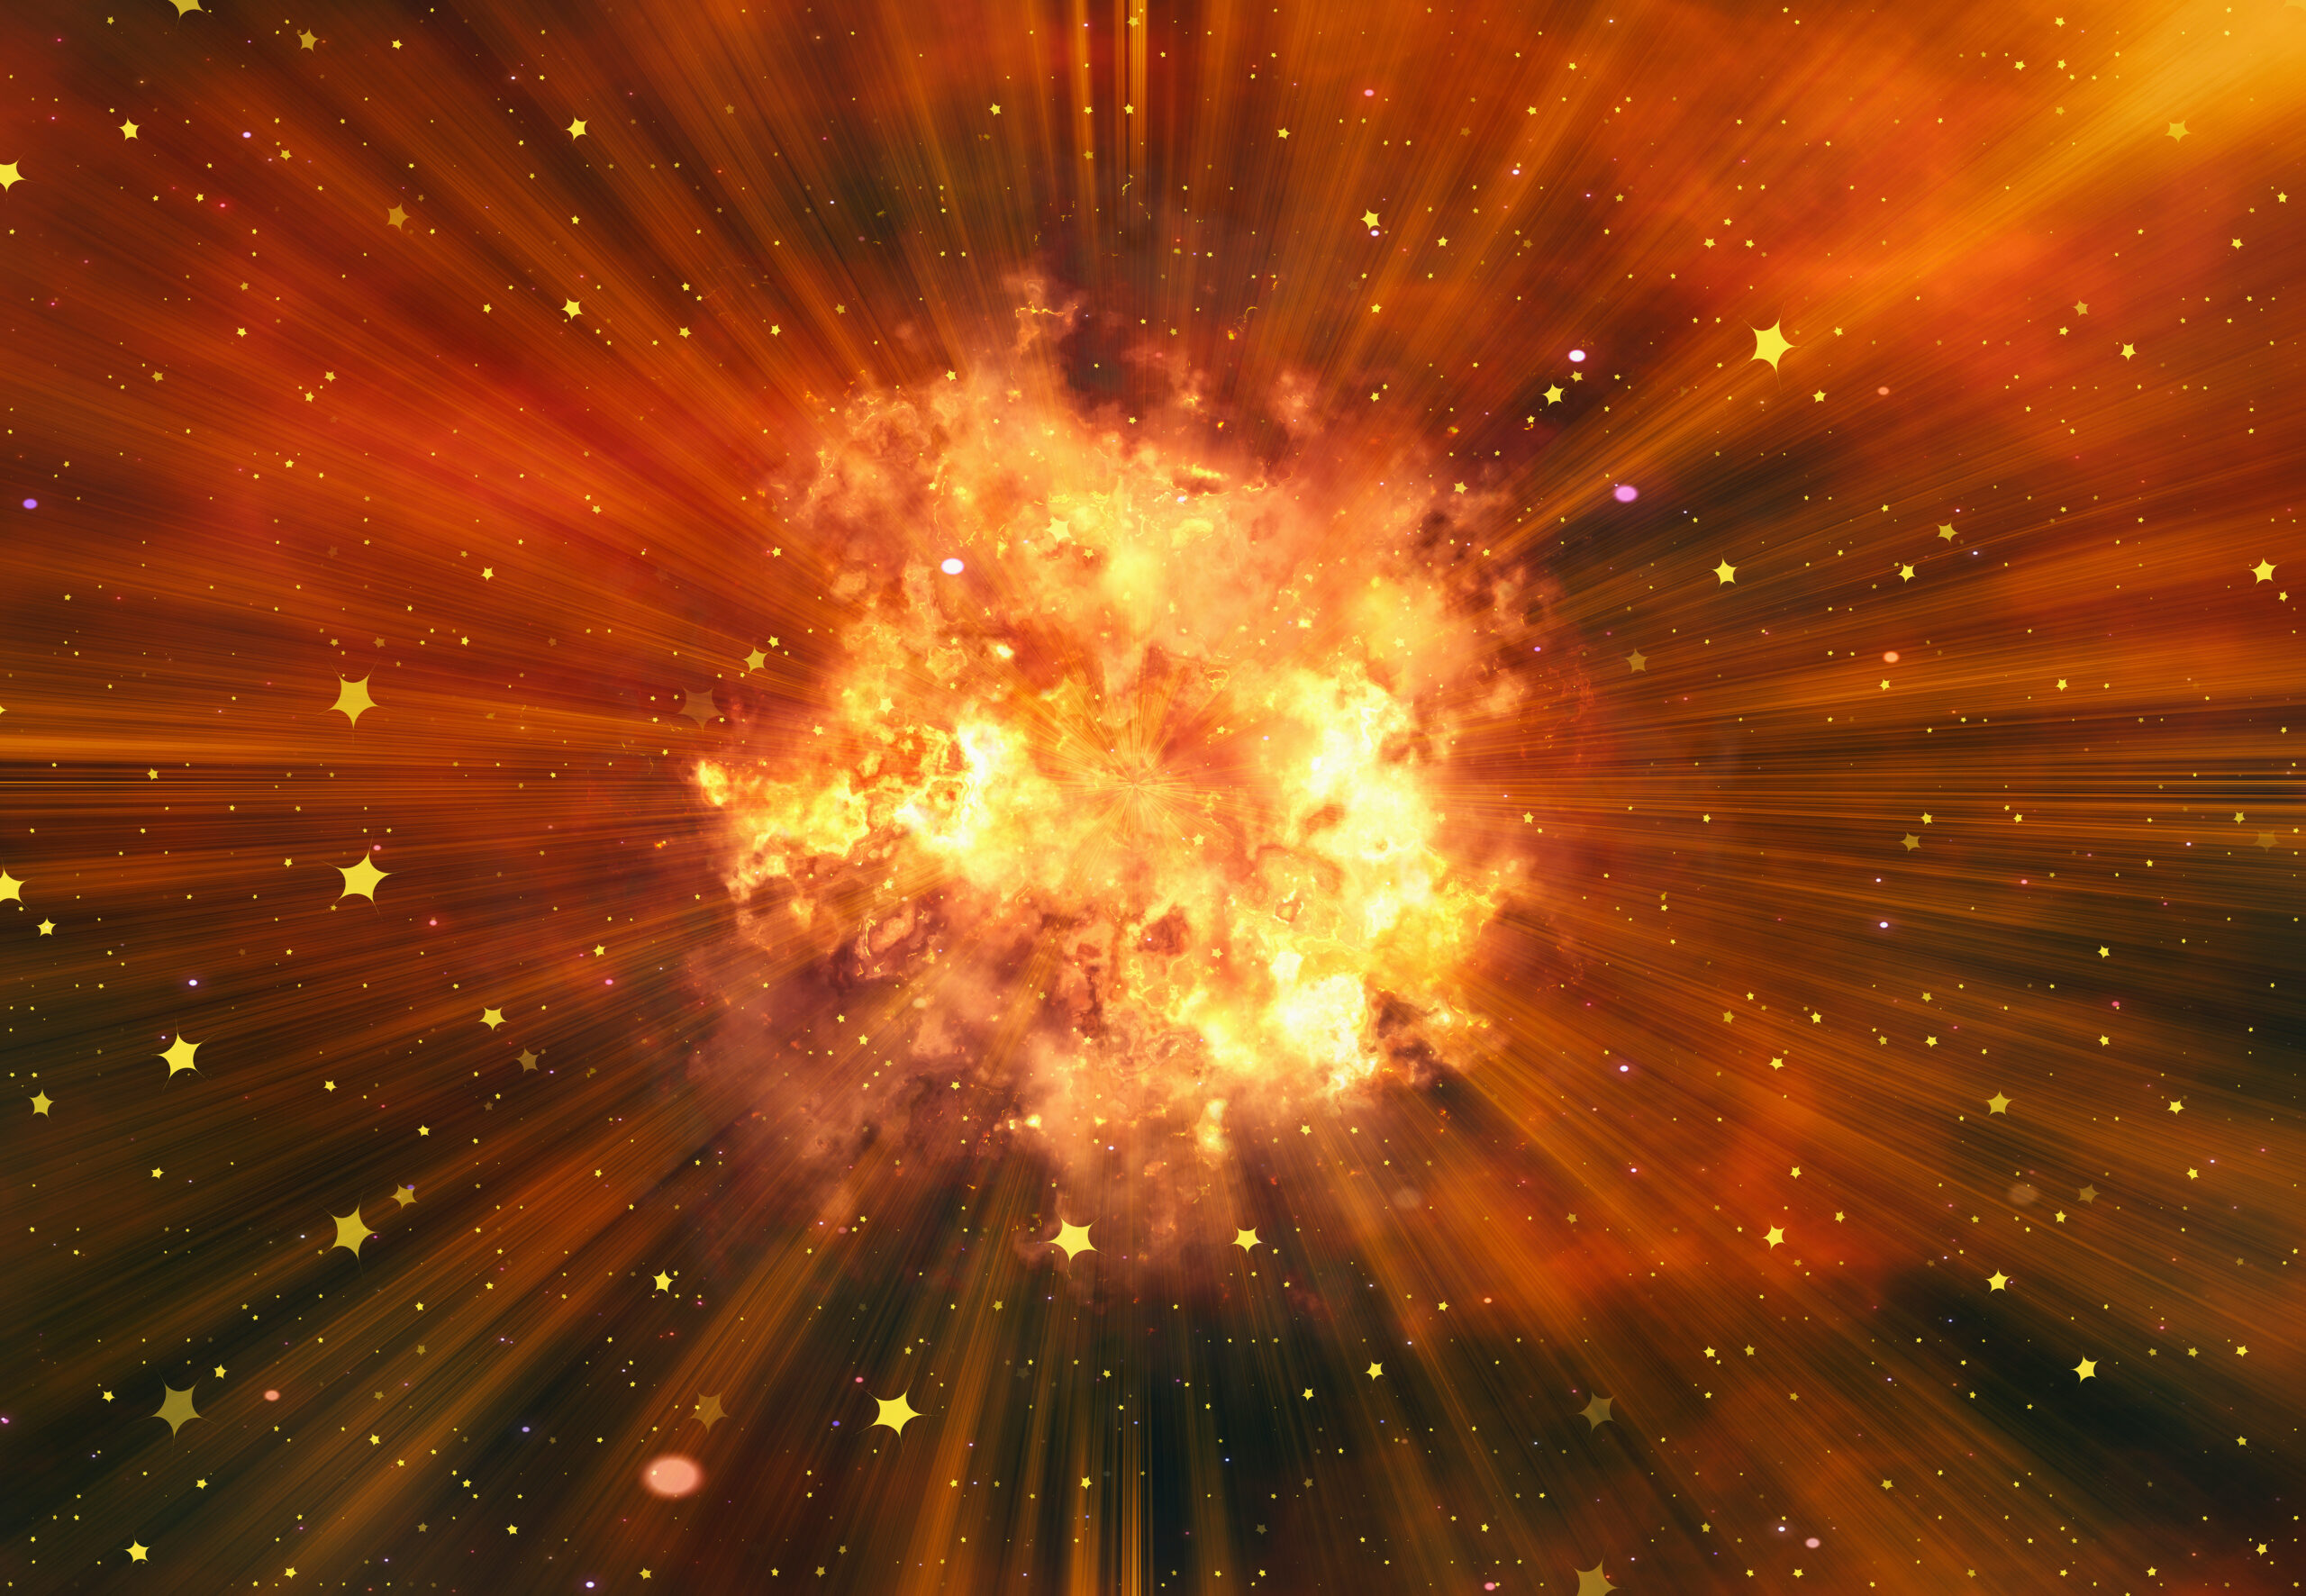 La enigmática muerte de una estrella genera un espectáculo cósmico